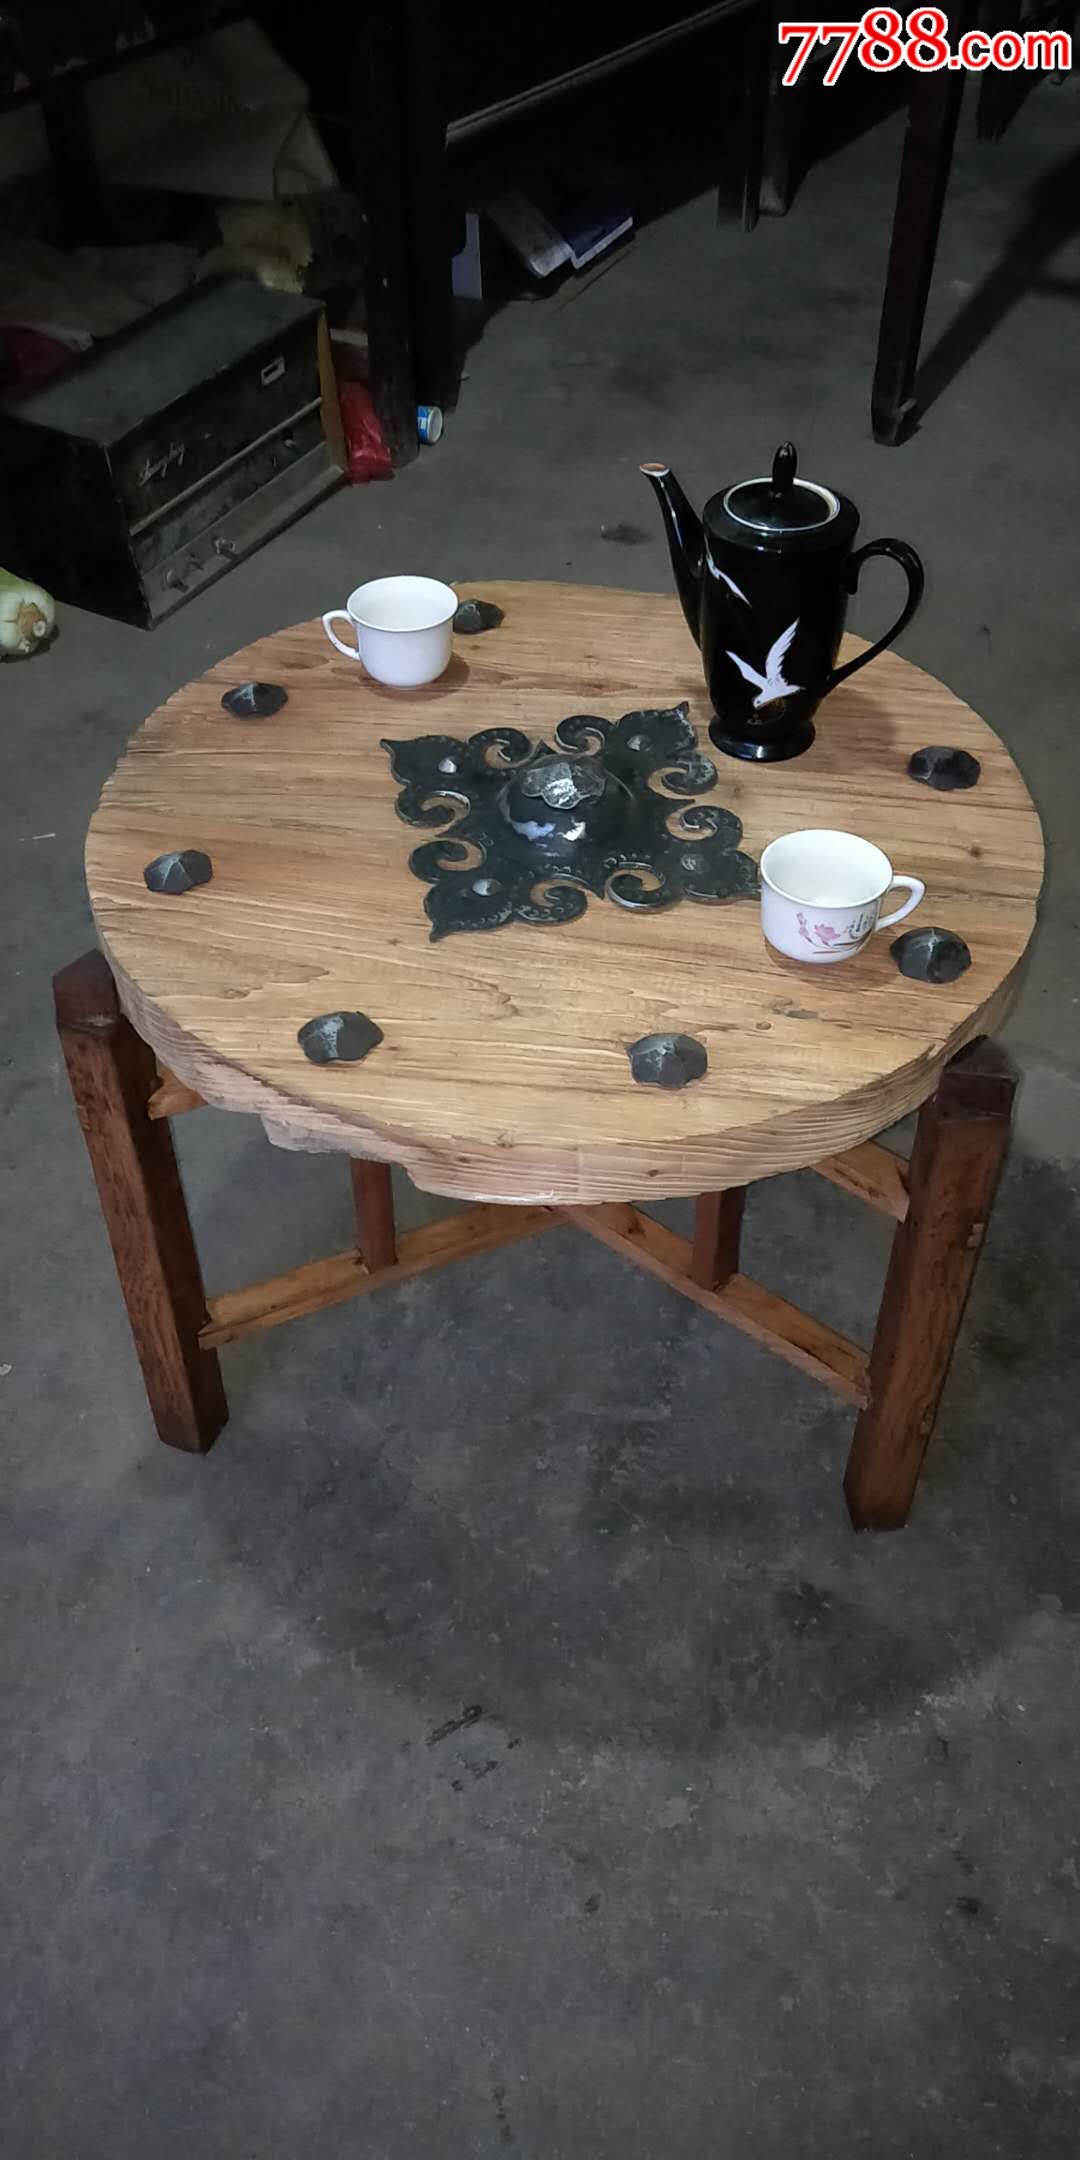 老式桌子改造成茶桌图片